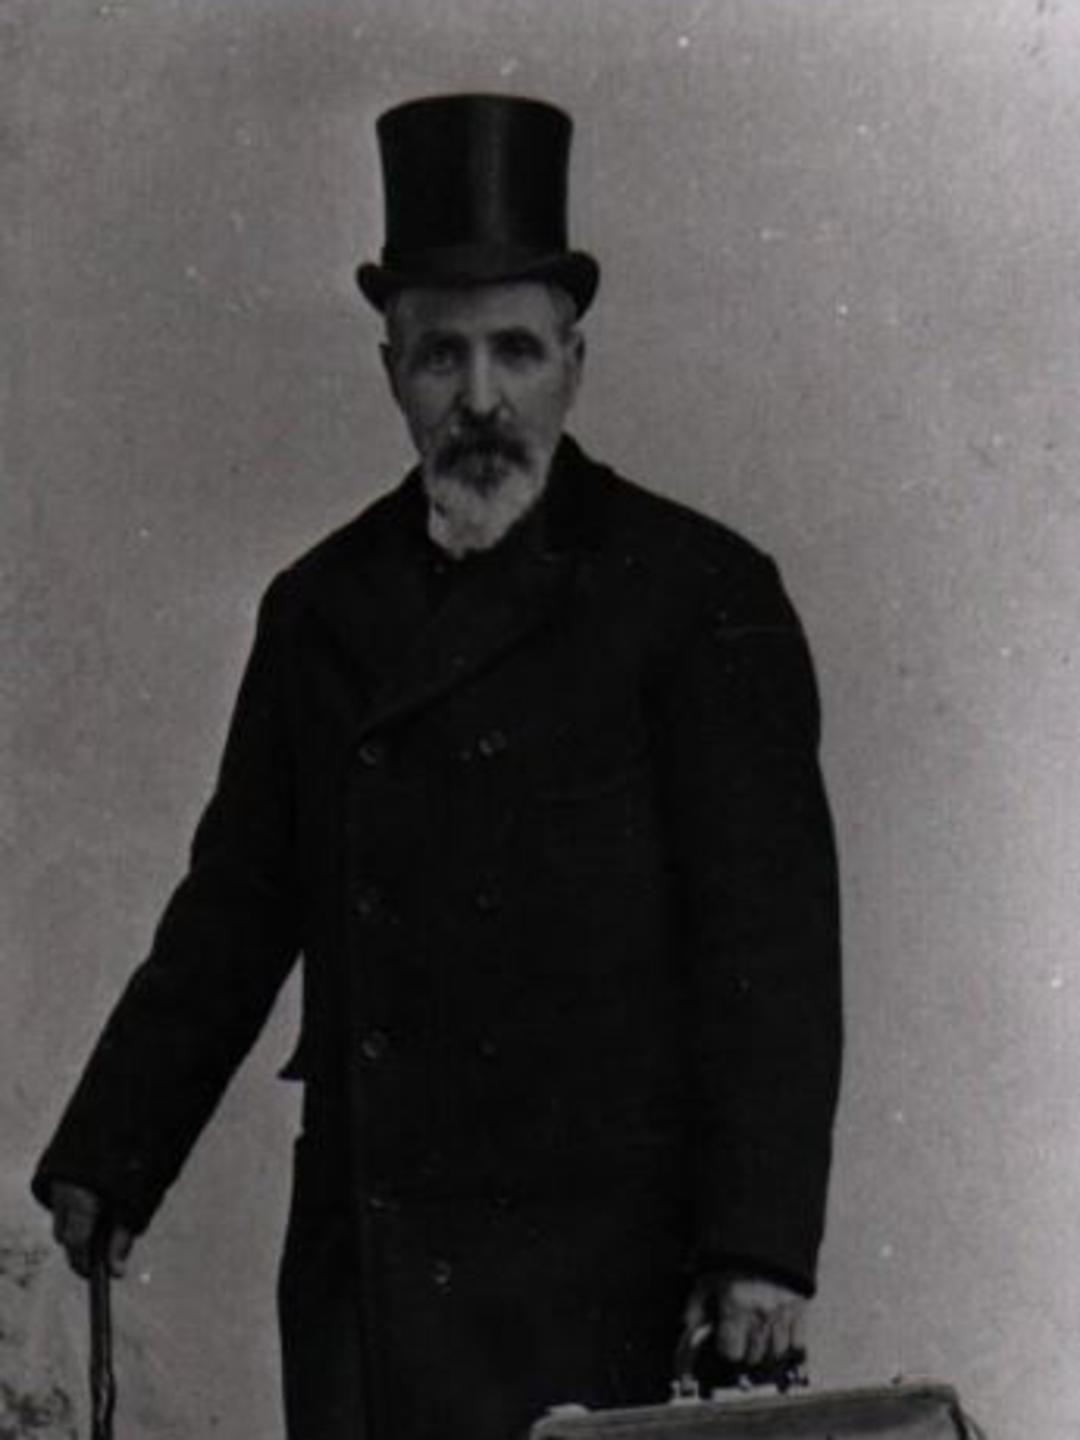 Lewis Olsen Dorius (1841 - 1914)